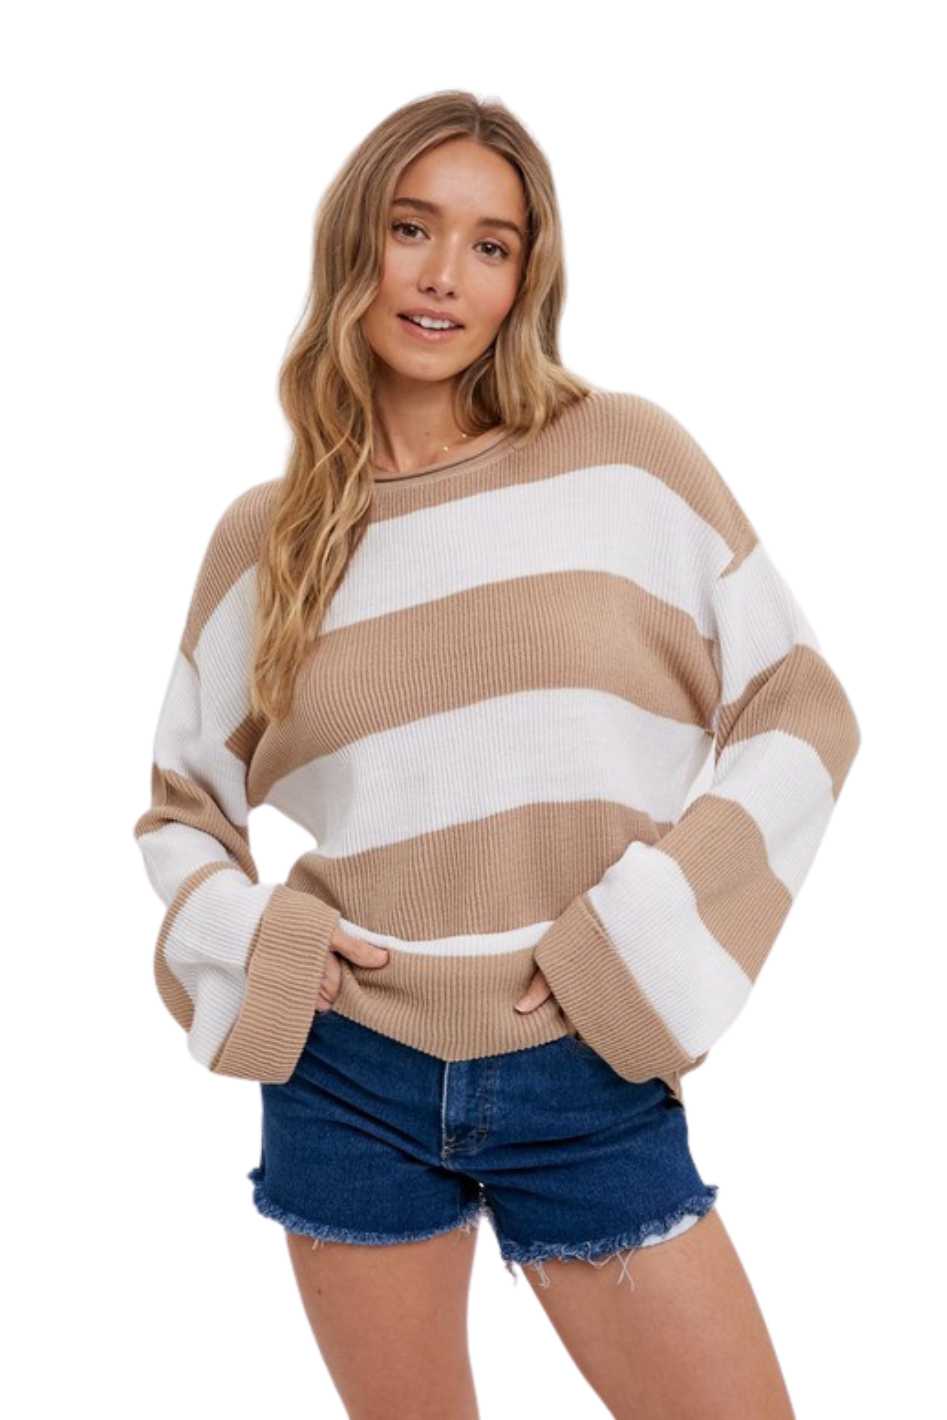 Coco Striped Sweater - Expressive Collective CO.